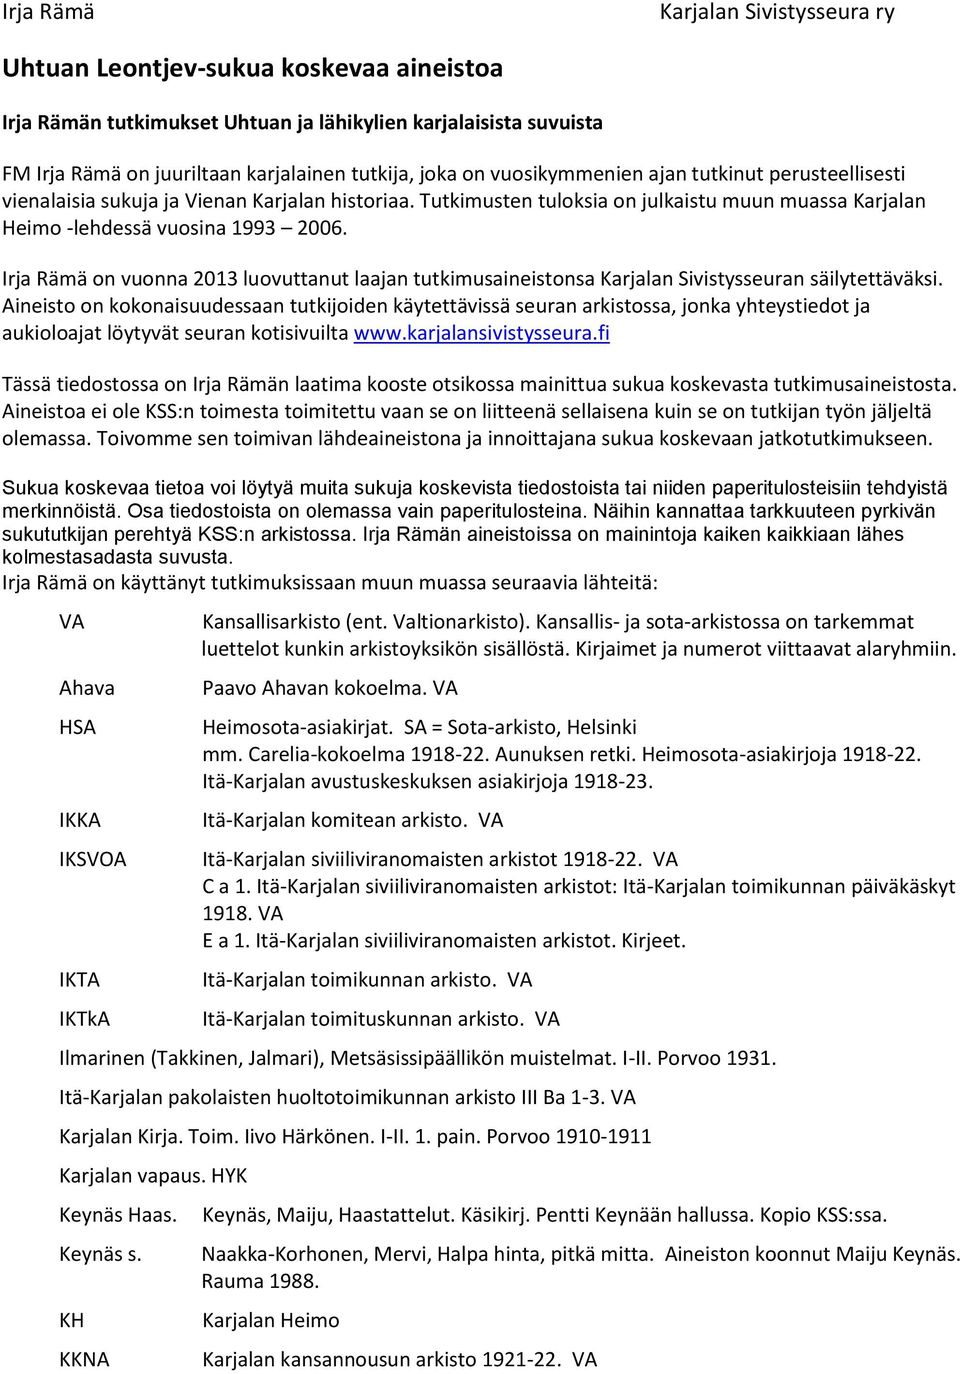 Irja Rämä on vuonna 2013 luovuttanut laajan tutkimusaineistonsa Karjalan Sivistysseuran säilytettäväksi.